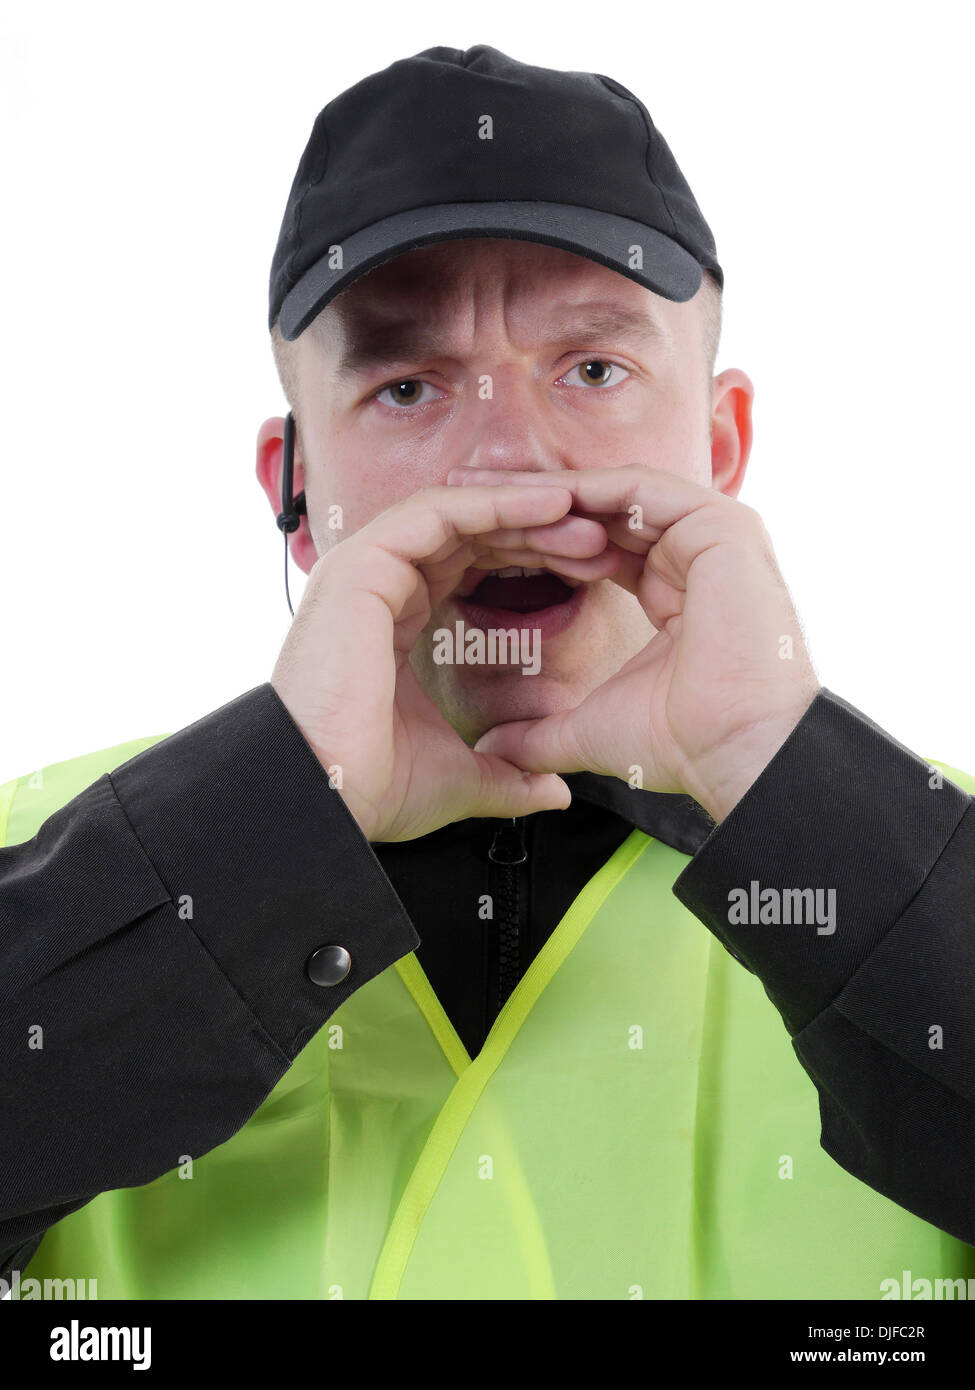 El policía llevaba chaleco reflectante amarillo manos alrededor de su boca y llamar Foto de stock